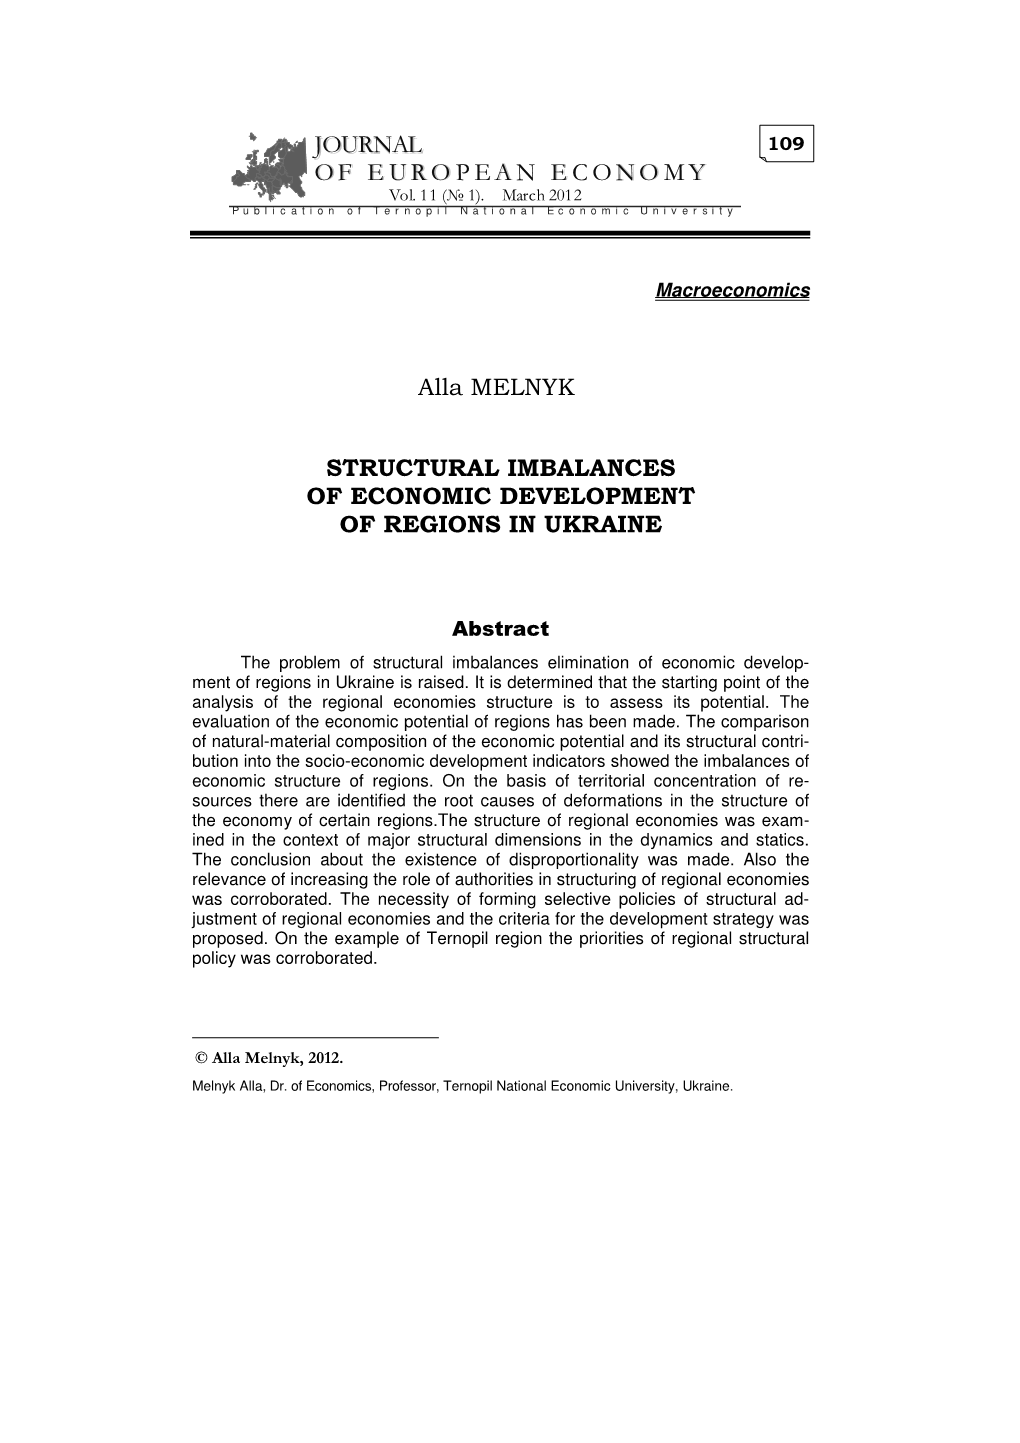 JOURNAL of E UR O P EA N E CONO MY Alla MELNYK STRUCTURAL IMBALANCES of ECONOMIC DEVELOPMENT of REGIONS in UKRAINE